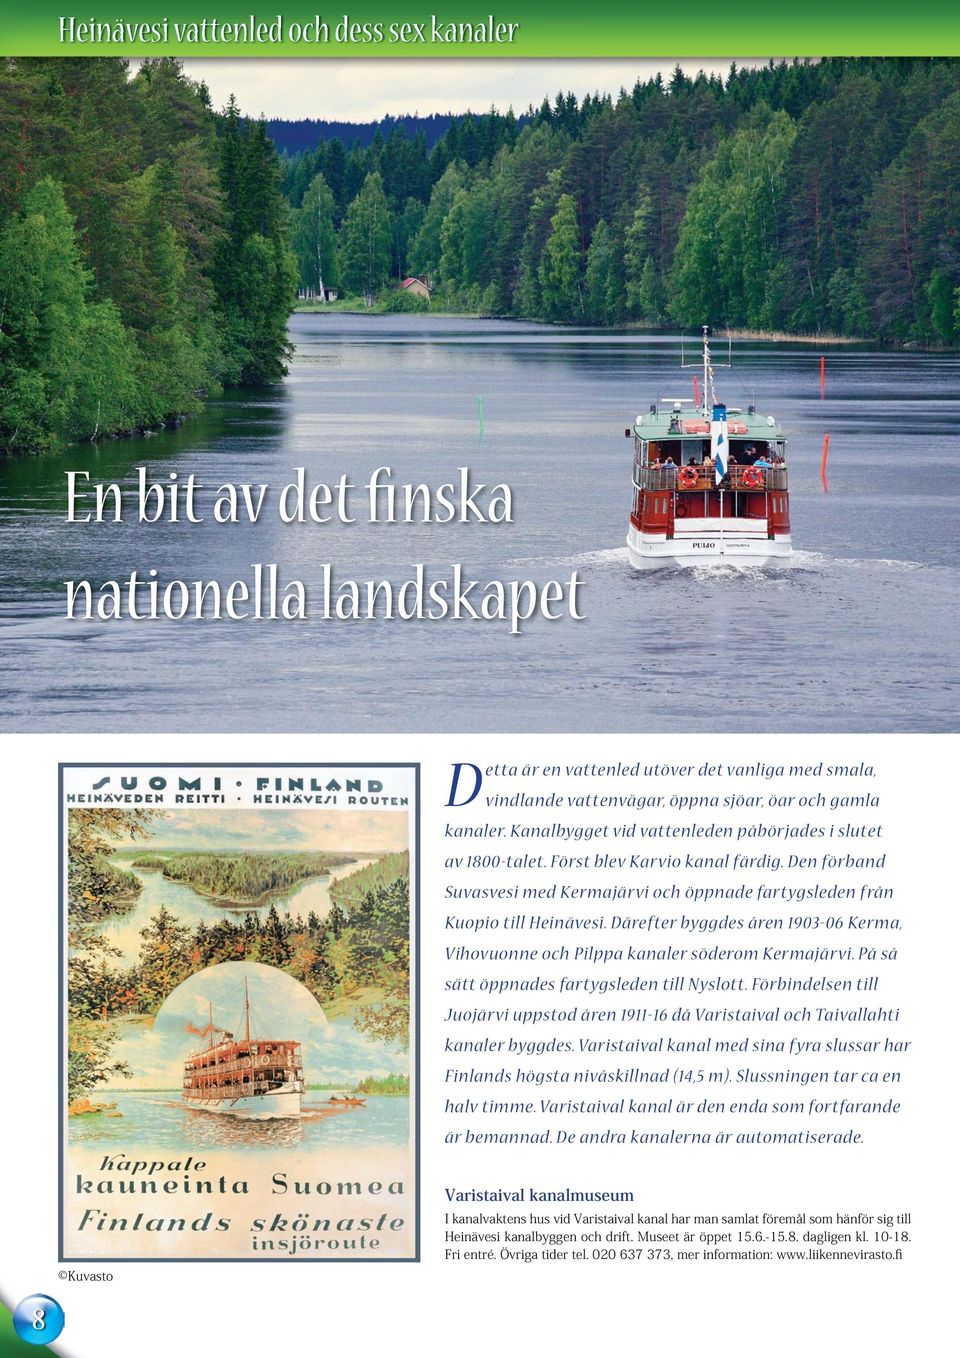 Därefter byggdes åren 1903-06 Kerma, Vihovuonne och Pilppa kanaler söderom Kermajärvi. På så sätt öppnades fartygsleden till Nyslott.